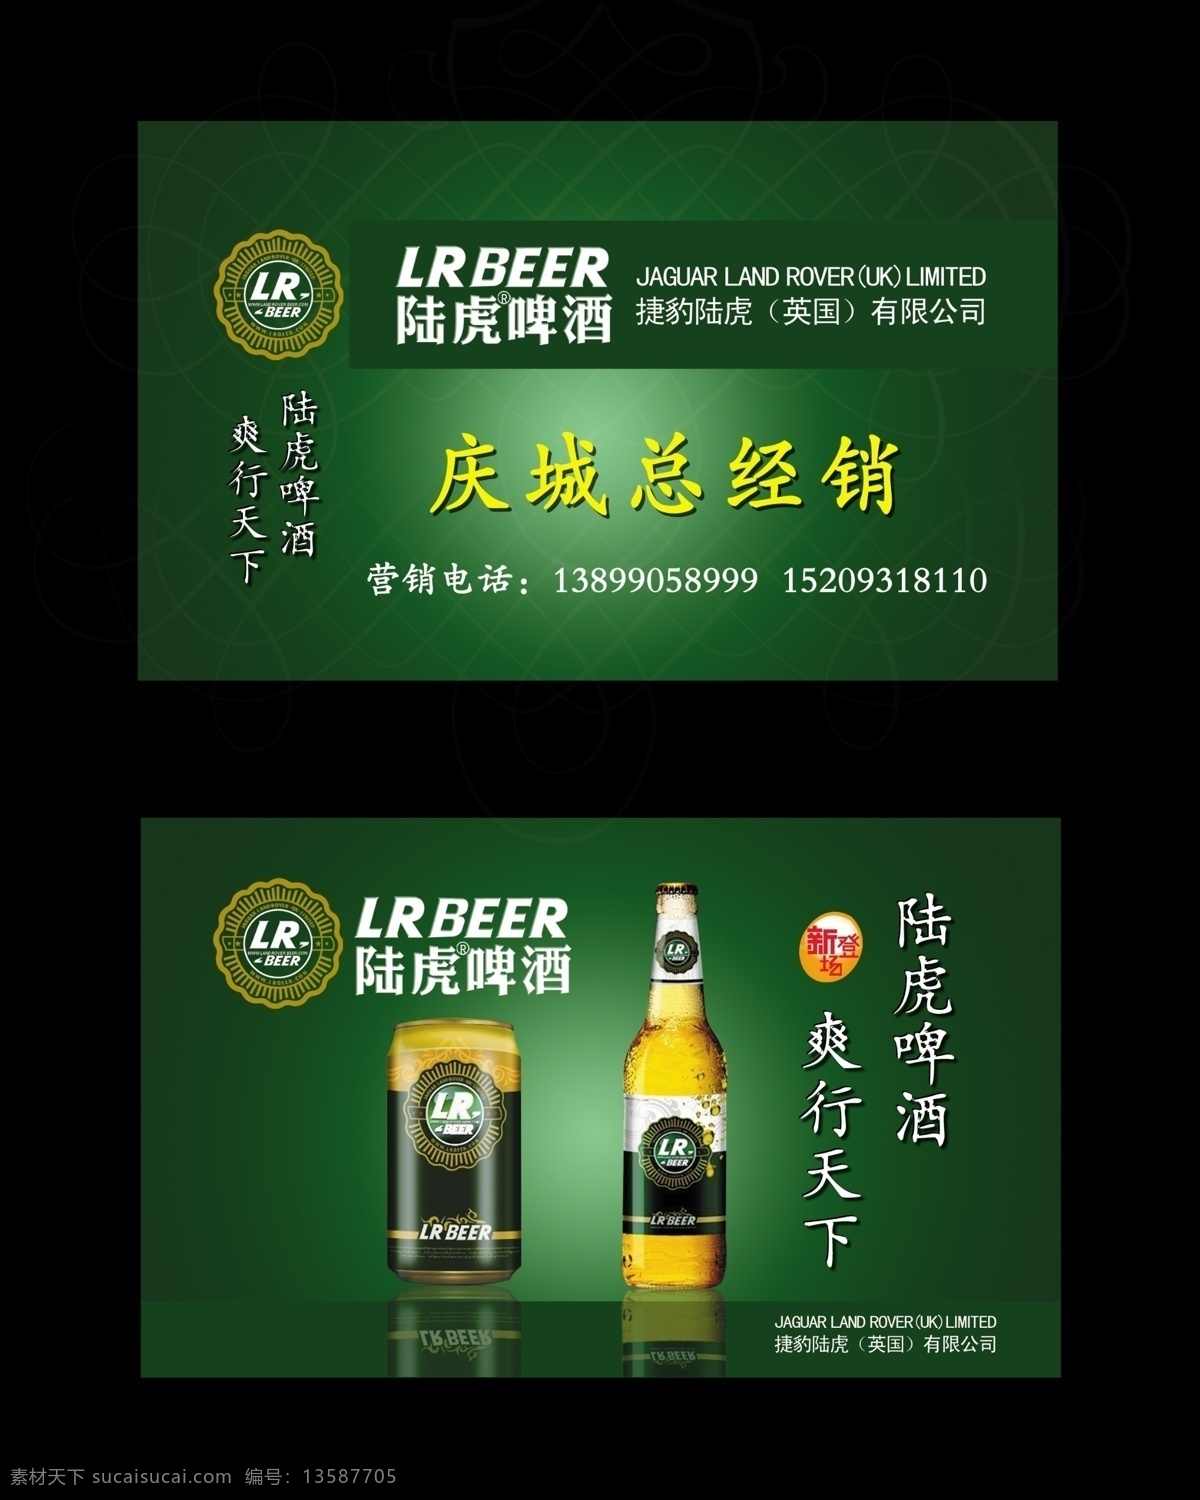 陆虎啤酒名片 陆虎啤酒 啤酒名片 绿色名片 名片设计 陆虎 啤酒 名片 名片卡片 广告设计模板 源文件